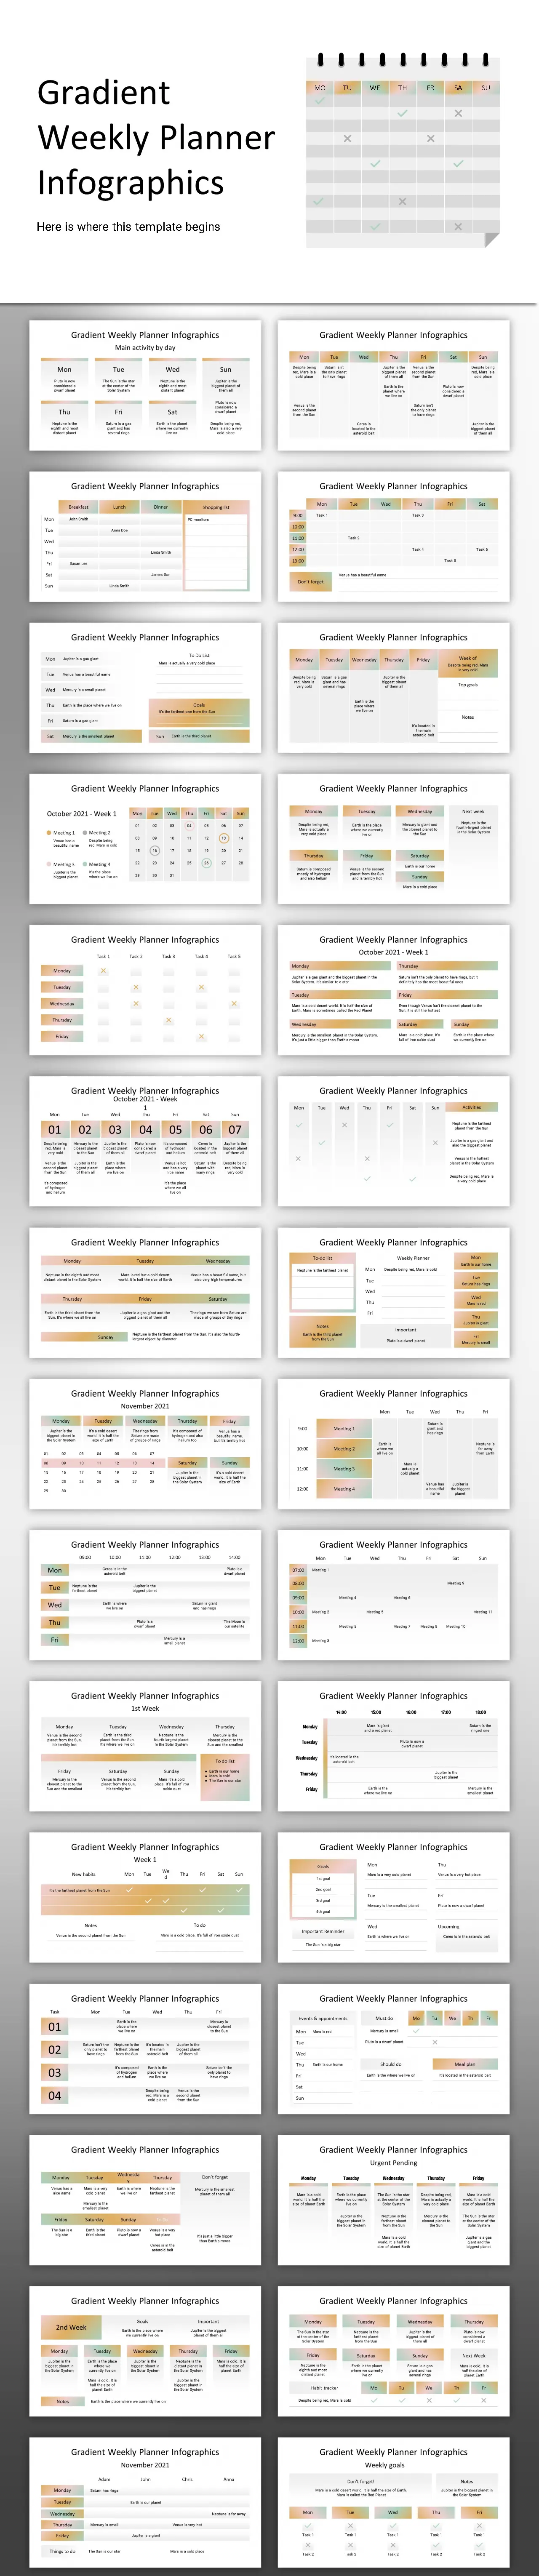 gradient weekly planner信息图形模板